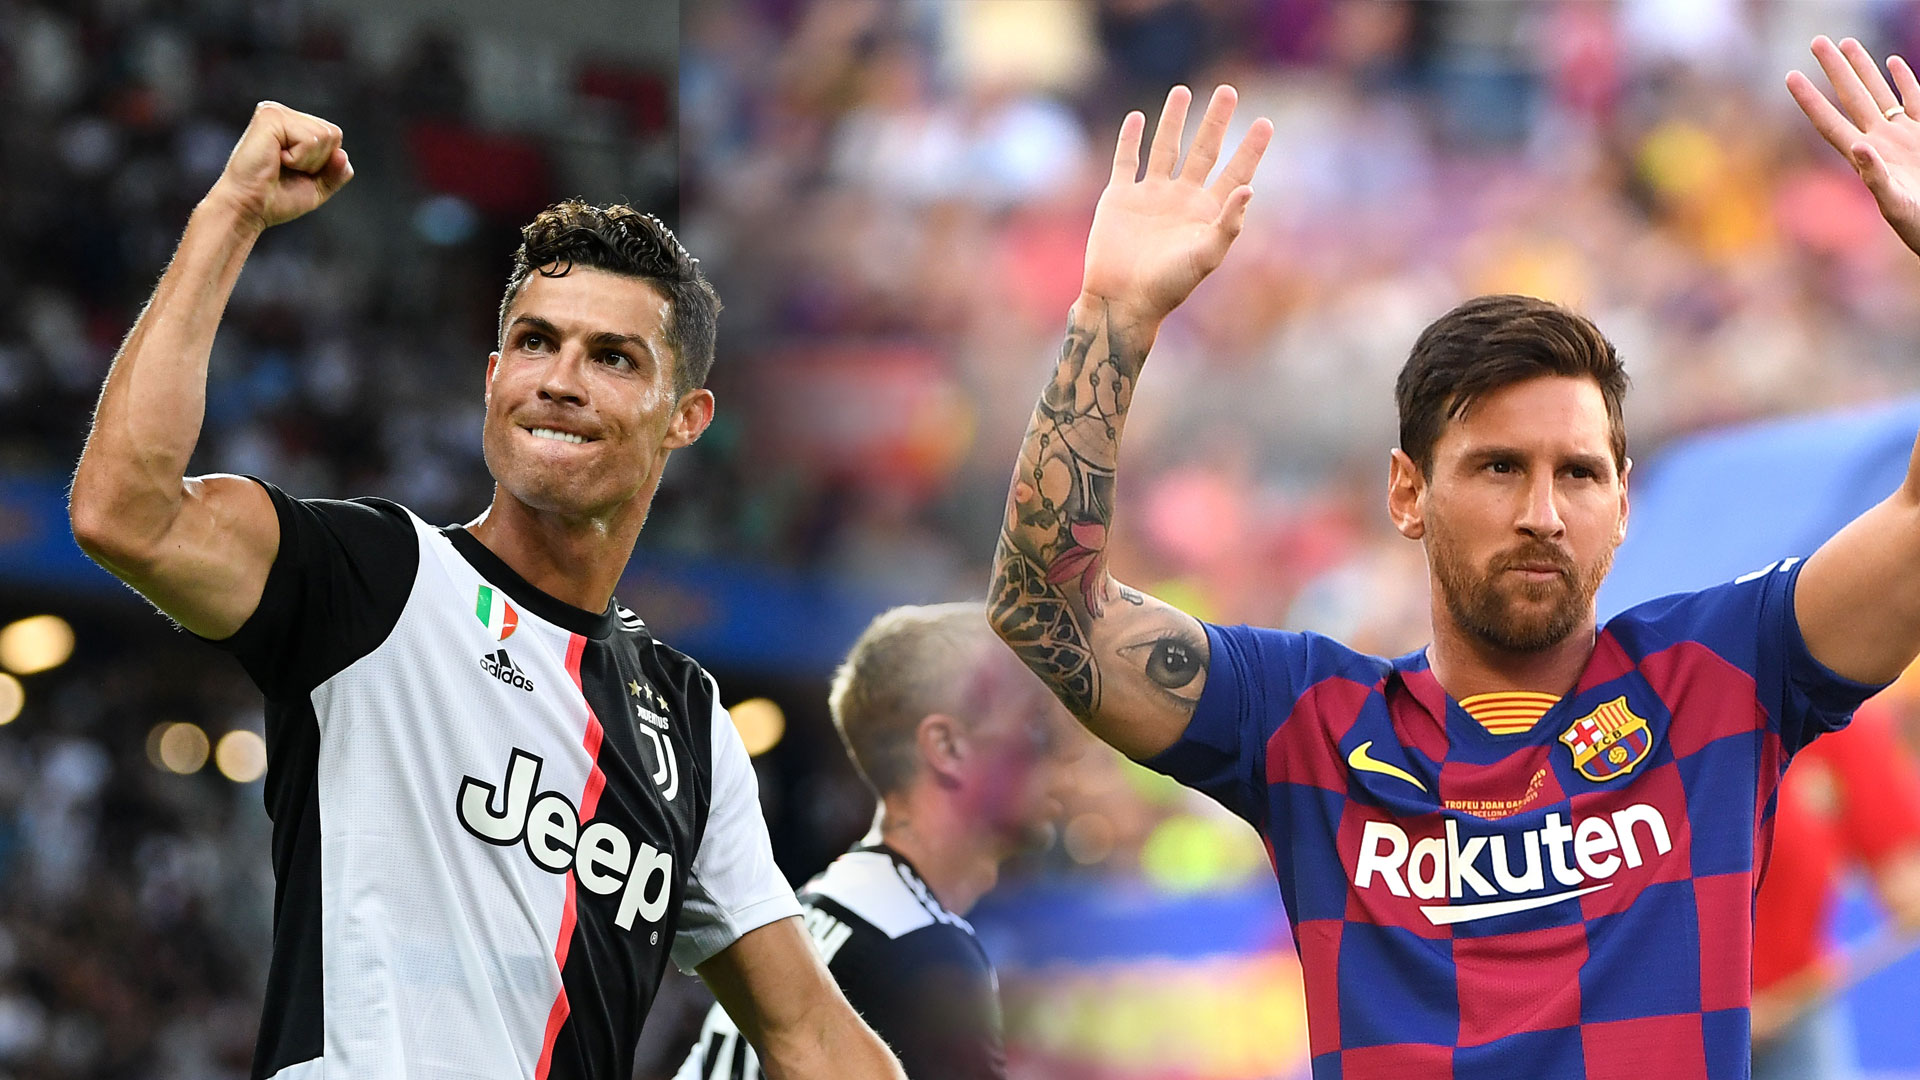 Hummels choisit le meilleur joueur de tous les temps entre Ronaldo et Messi avant le Ballon d’Or 2019